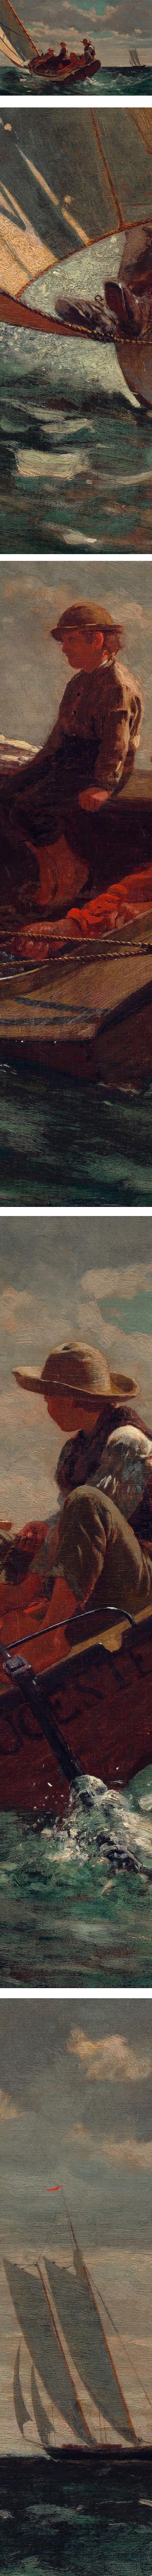 Breezing Up (A Fair Wind), Winslow Homer